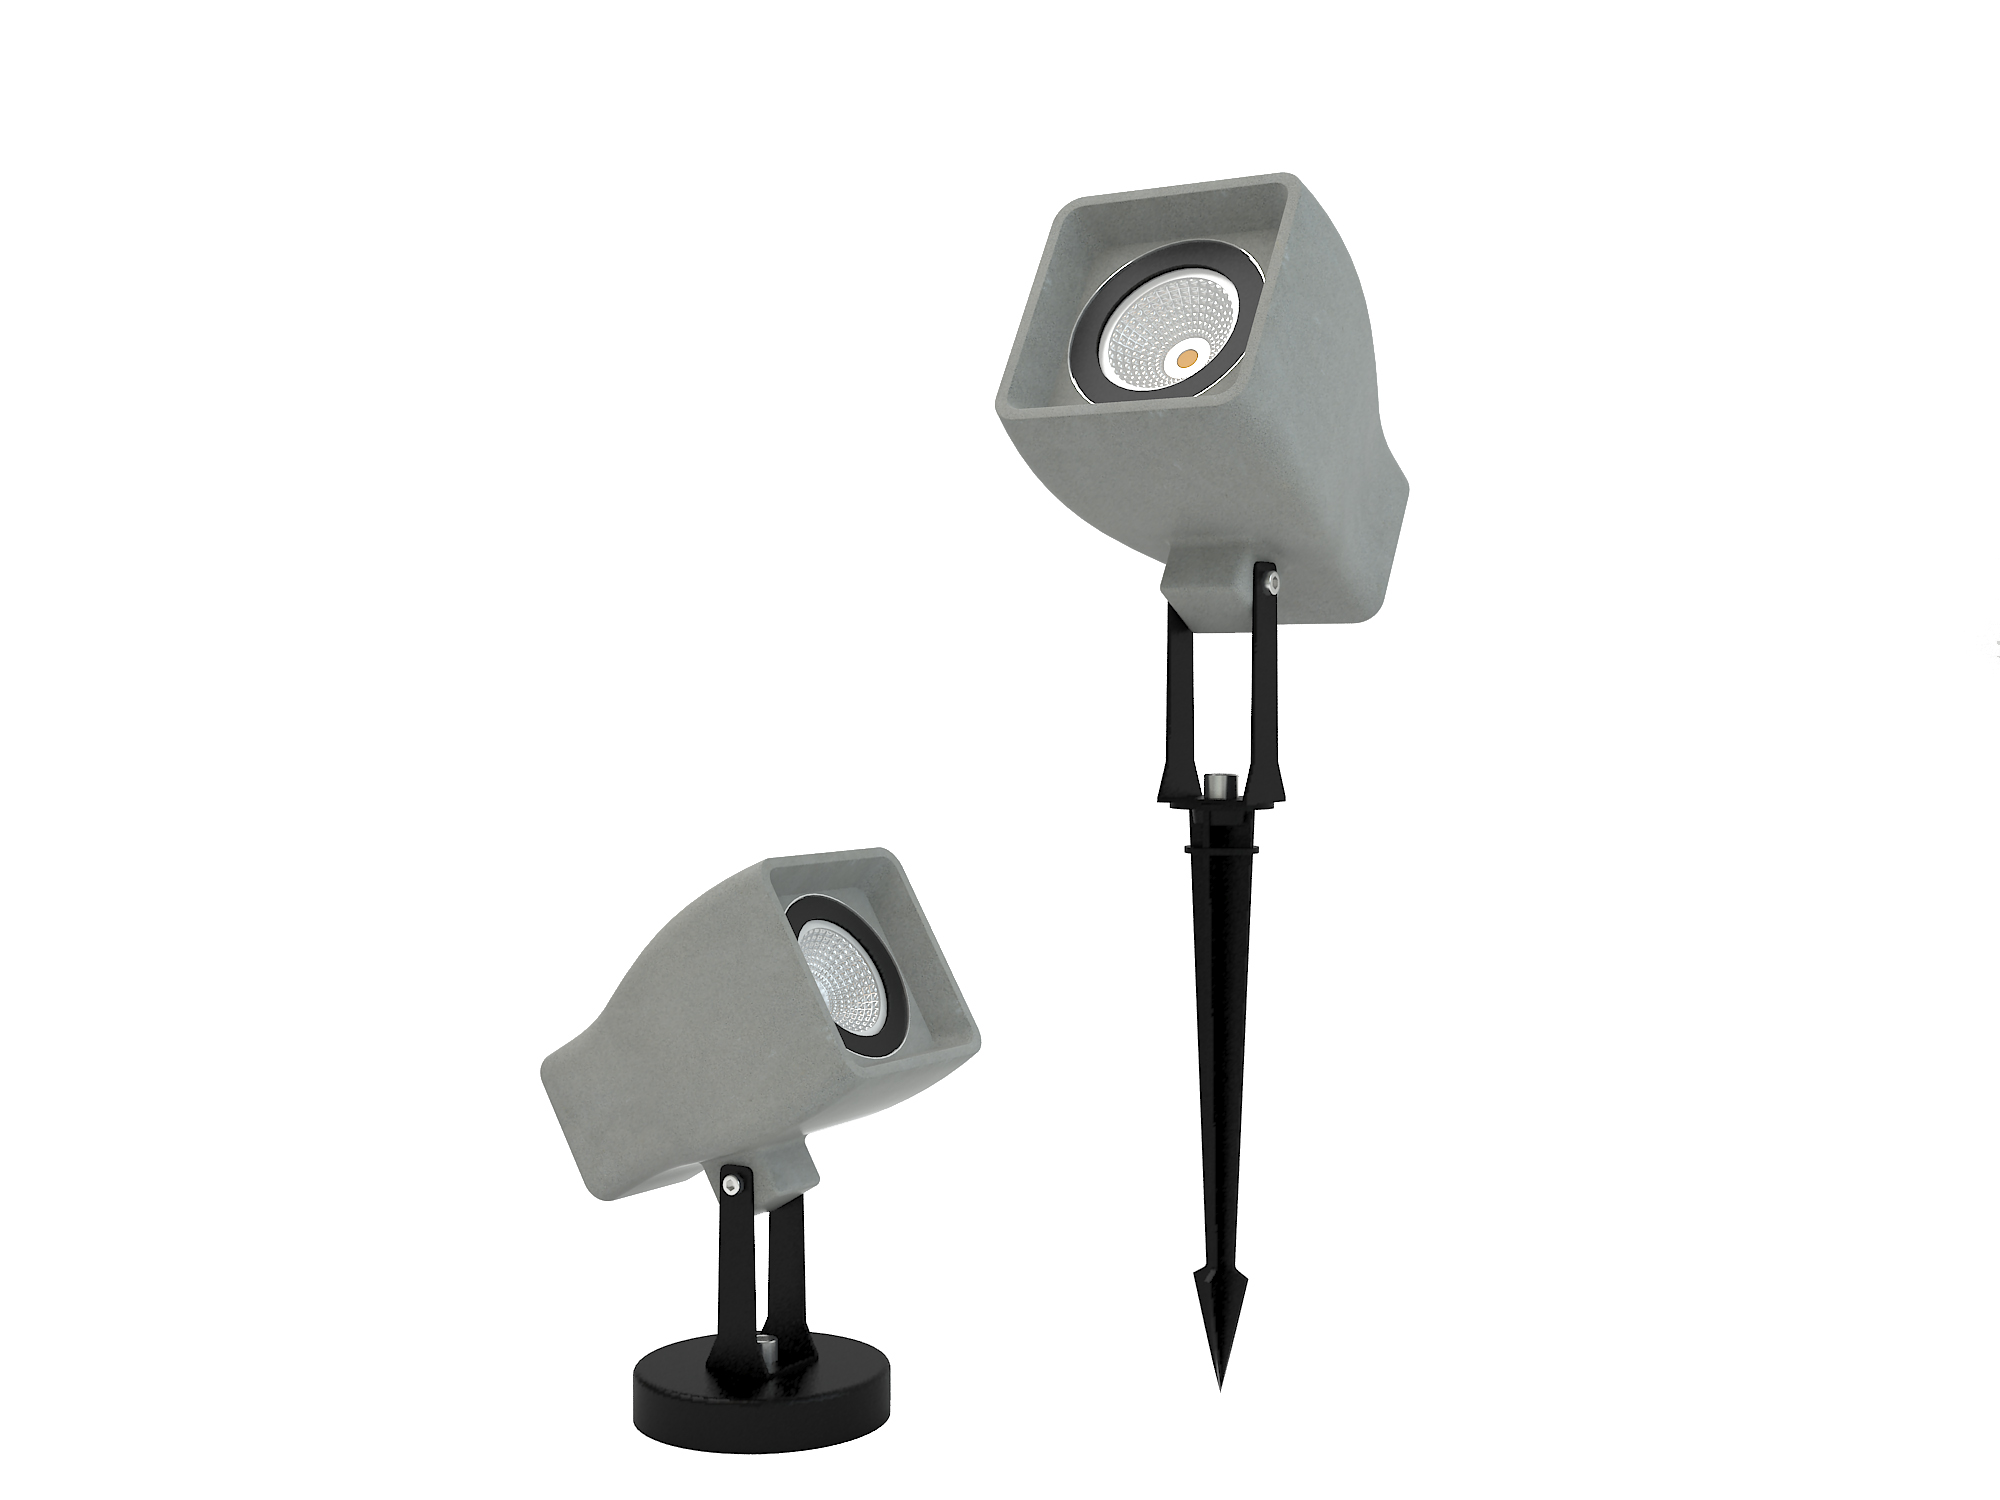 LVY-O6024 Gray/black Concrete garden outdoor LED lamp